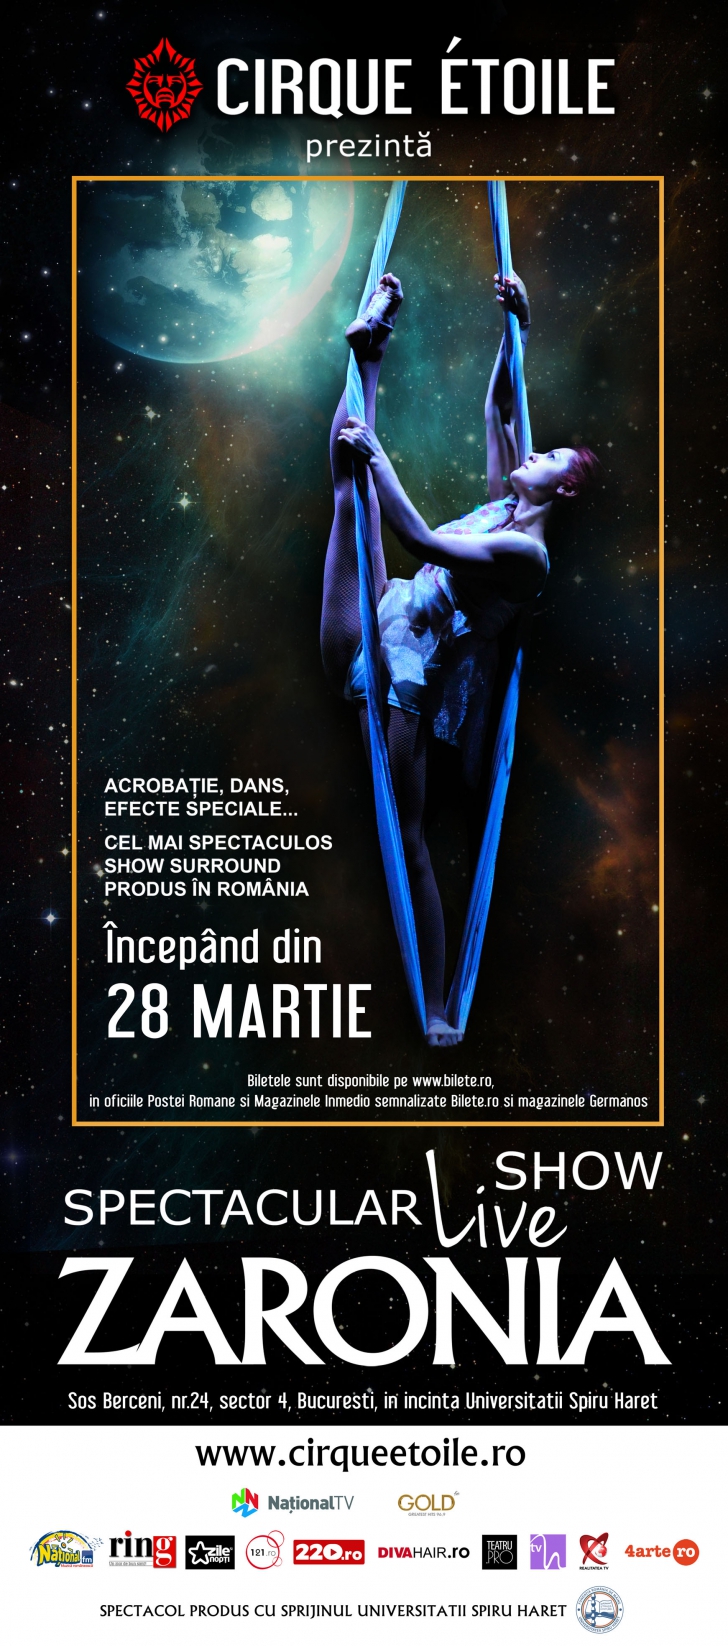 Cirque Etoile vă invită la premiera Zaronia!